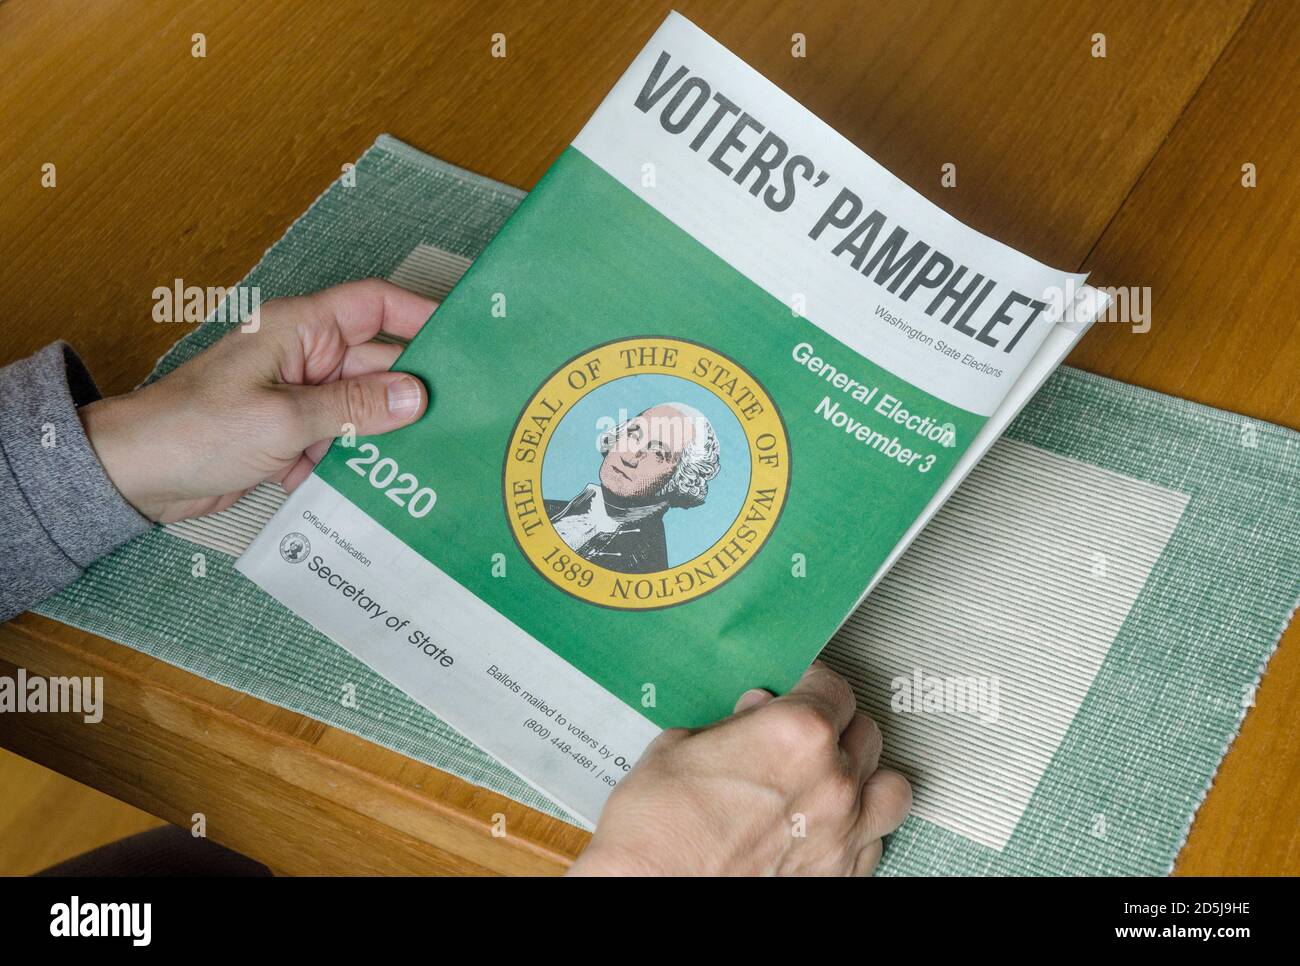 Un électeur tient la brochure des électeurs, qui contient des informations sur les candidats et les mesures à l'échelle de l'État pour le public. Banque D'Images